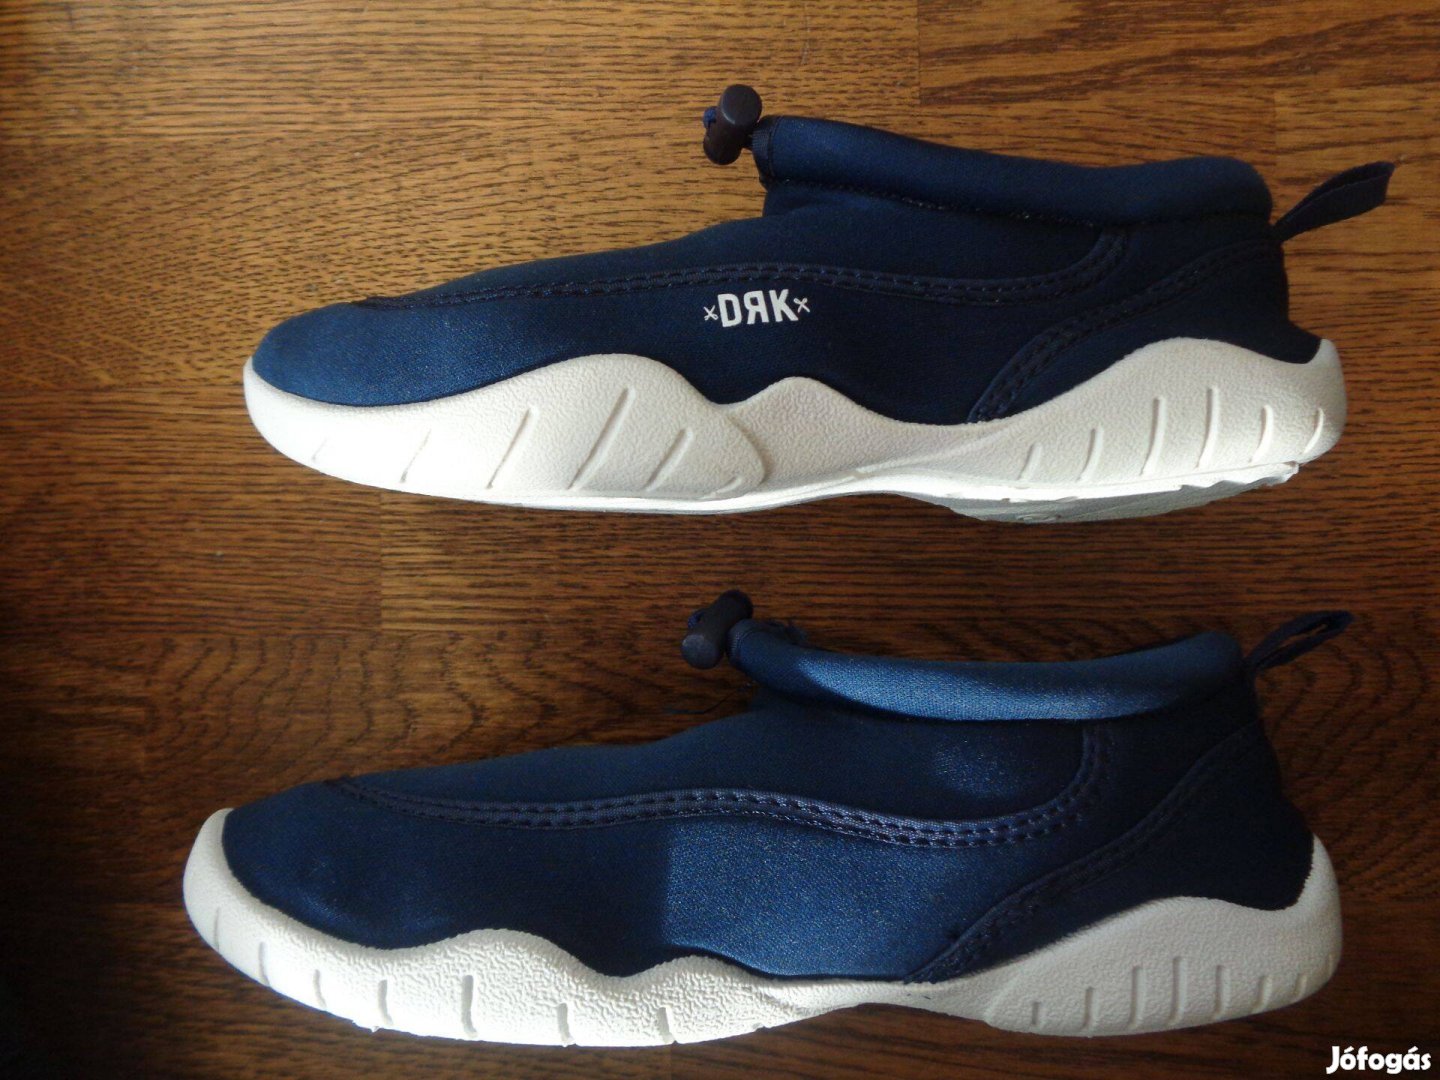 Új eredeti Dorko DRK Aquatic 30-as 30 gyerekcipő utcai cipő 2 színben